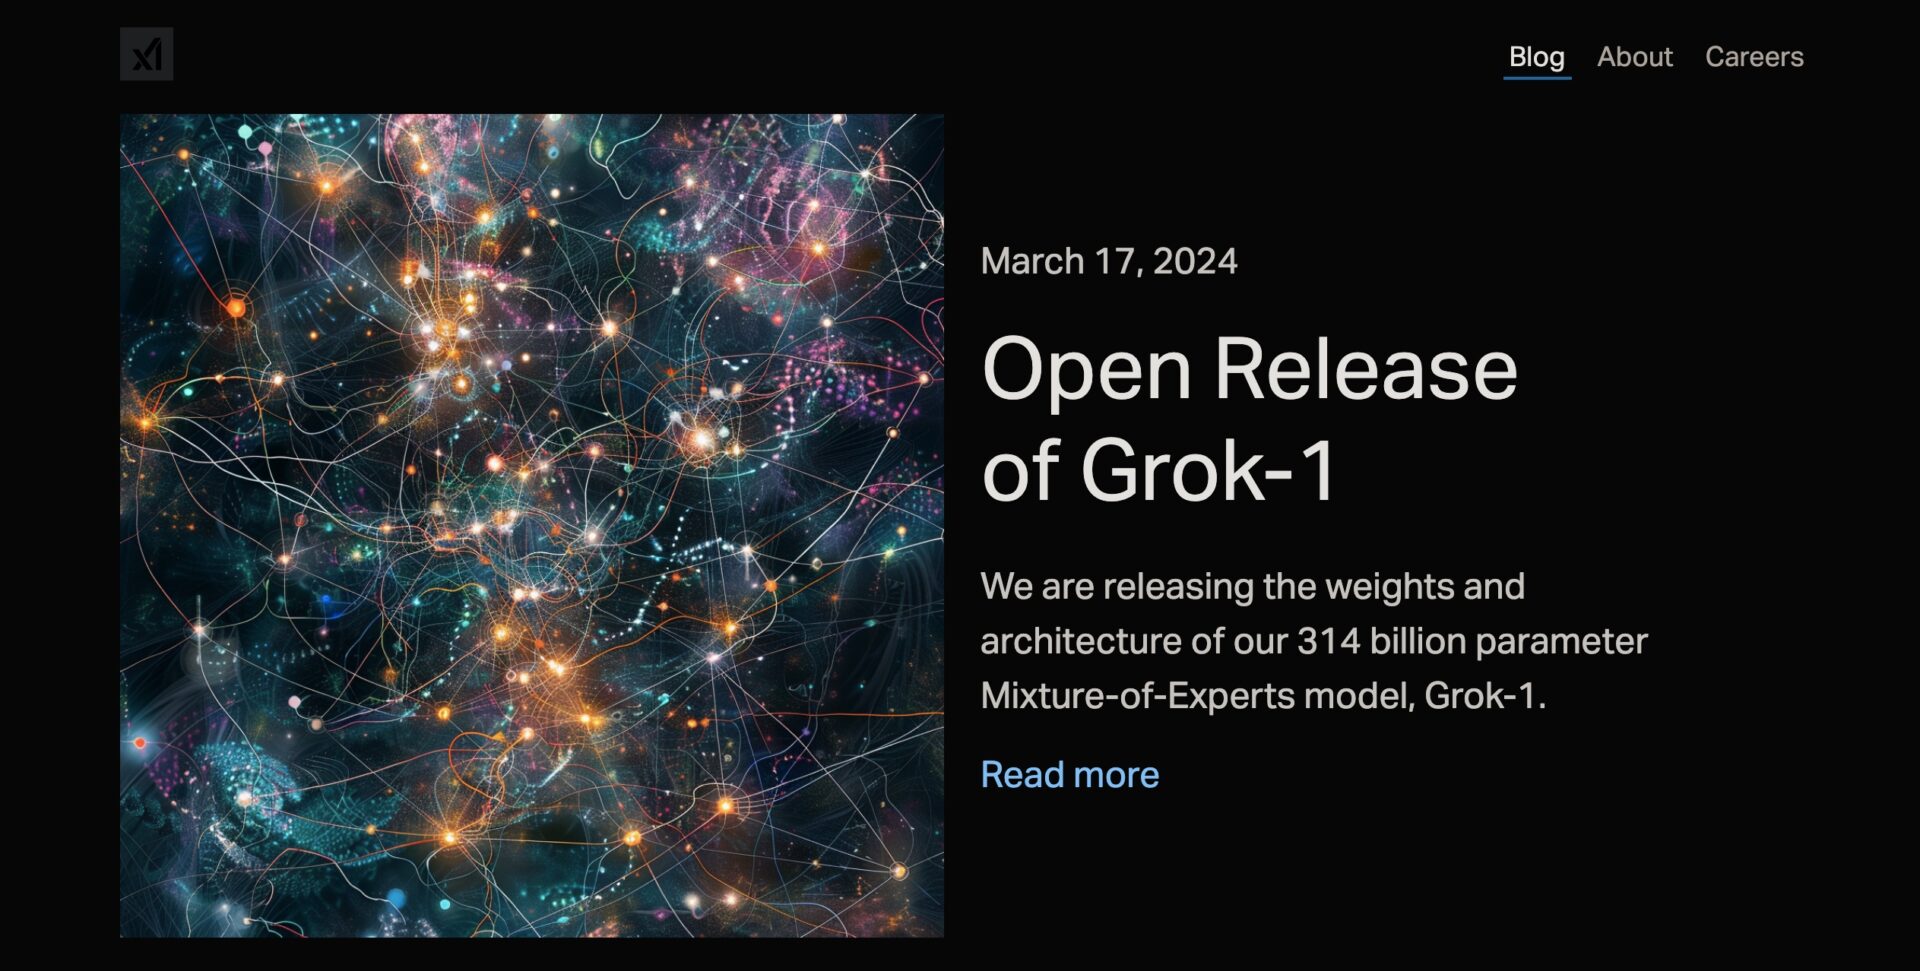 xAIによるGrok-1のオープン化の発表の画像。